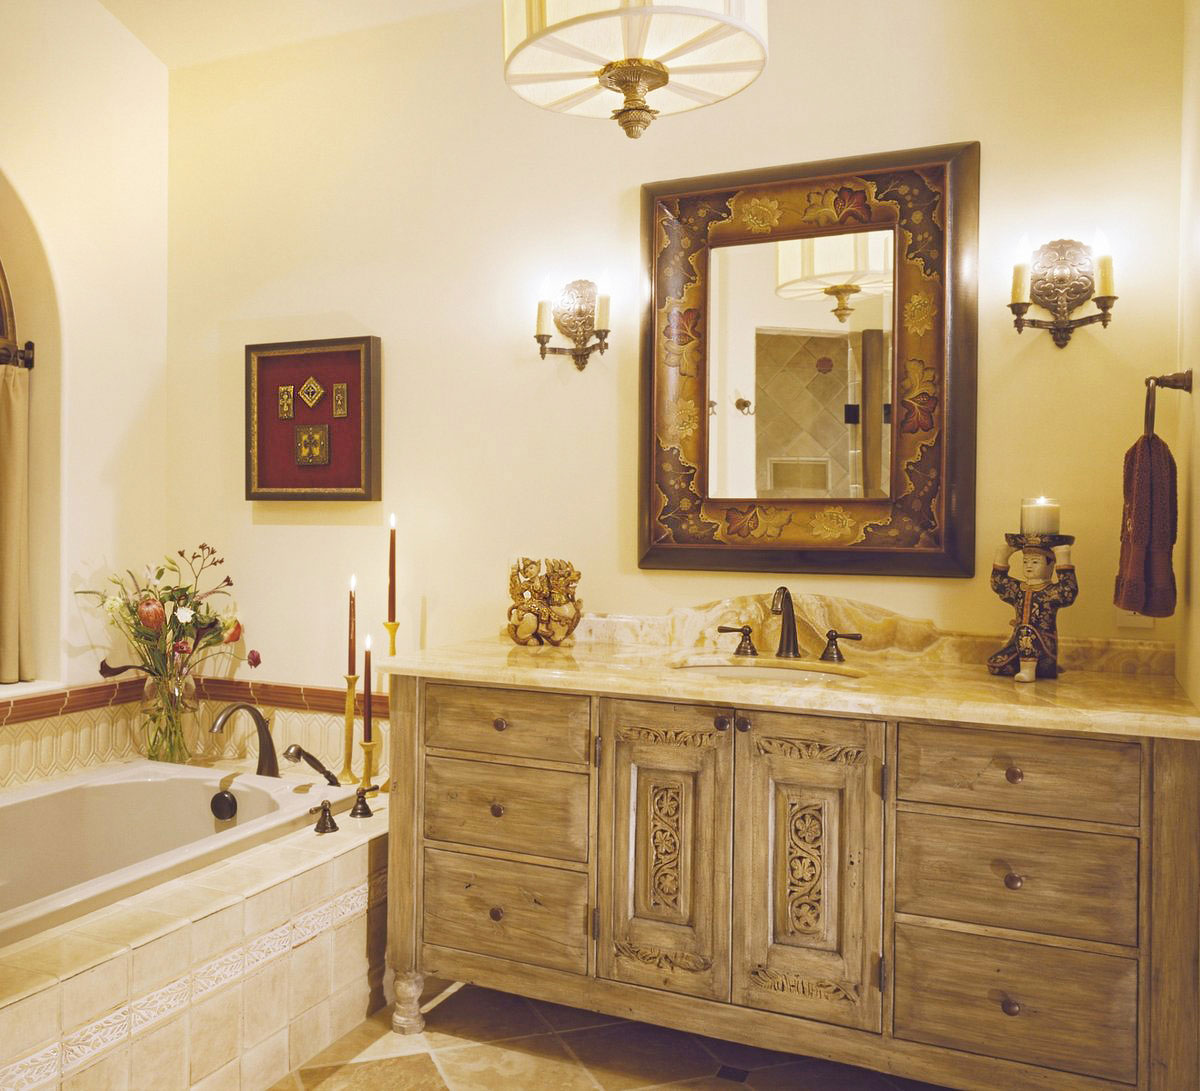 Urzekający projekt łazienki w stylu vintage: stylowe rustykalne meble łazienkowe z jasnego drewna, beżowy granitowy blat, ozdobna armatura, lustro, kinkiety i mnóstwo dekoracji